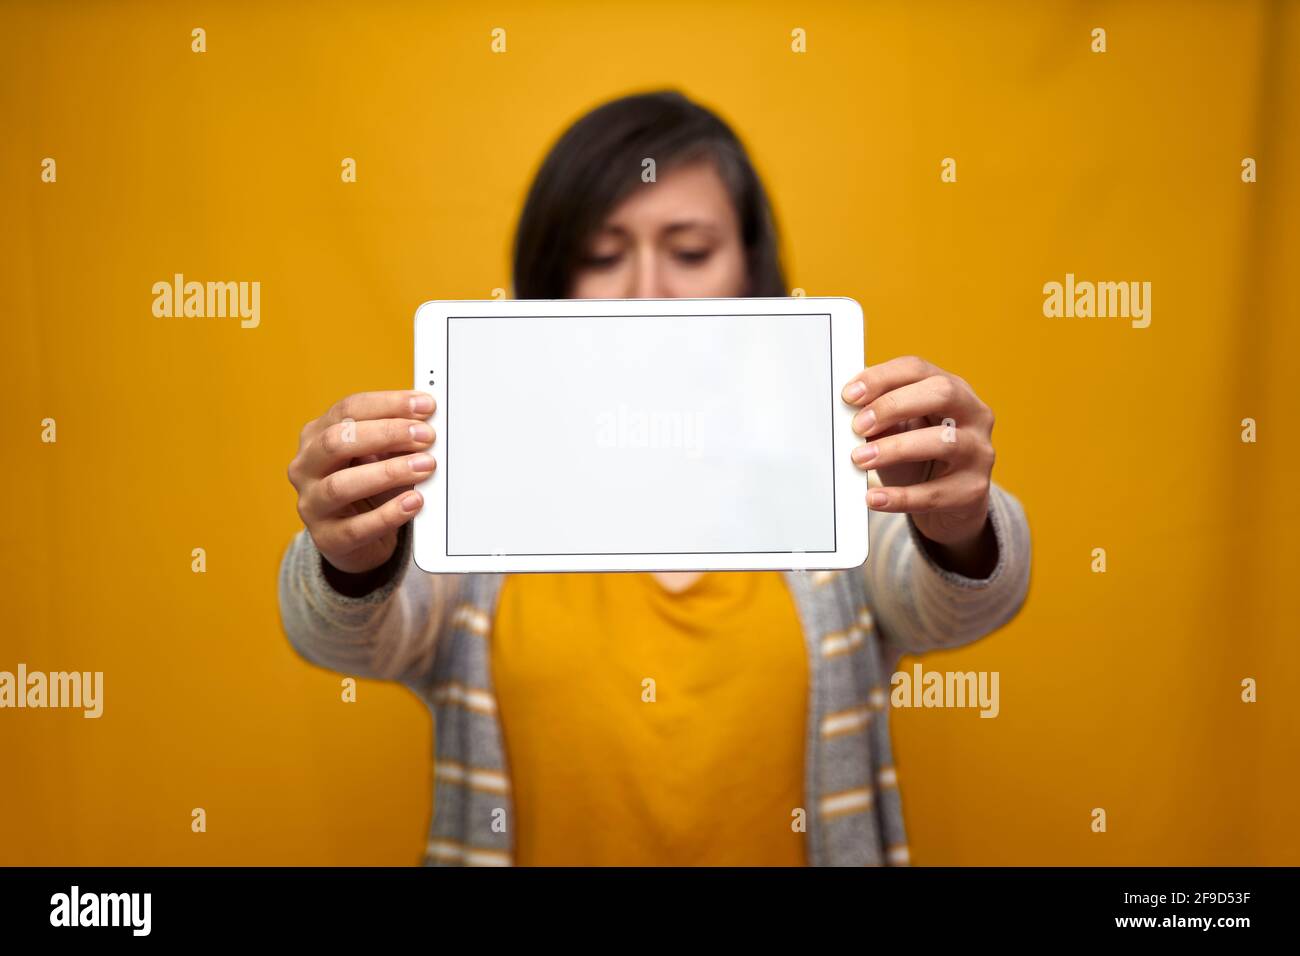 Eine Frau, die nicht fokussiert war und einen fokussierten Tablet-pc vor ihrem Gesicht auf goldgelbem Hintergrund hielt. Konzept der Technologie, Gadgets. Stockfoto